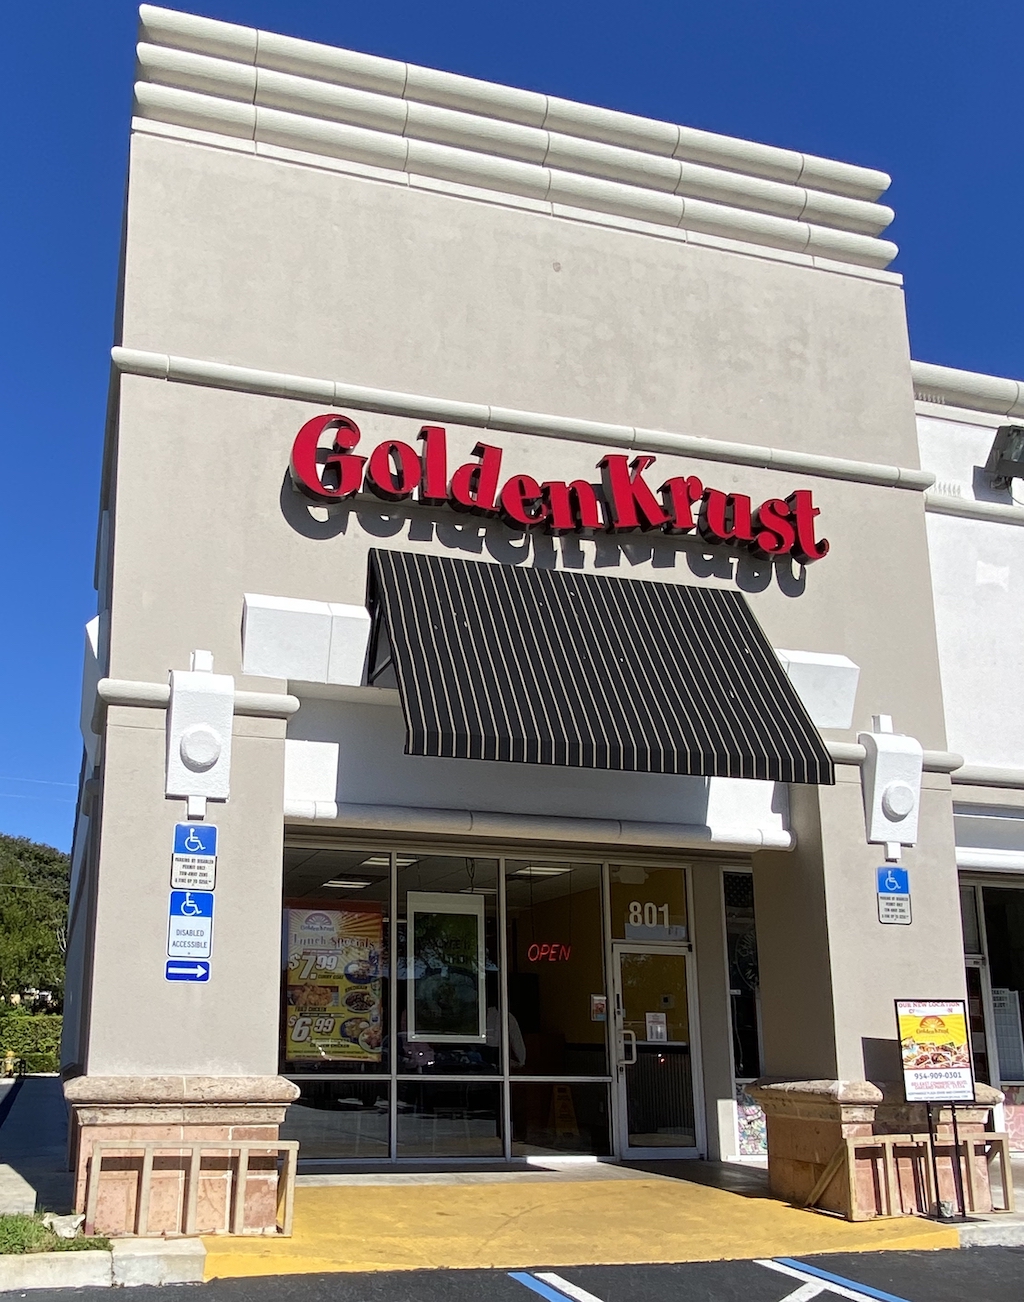 Golden Krust store front